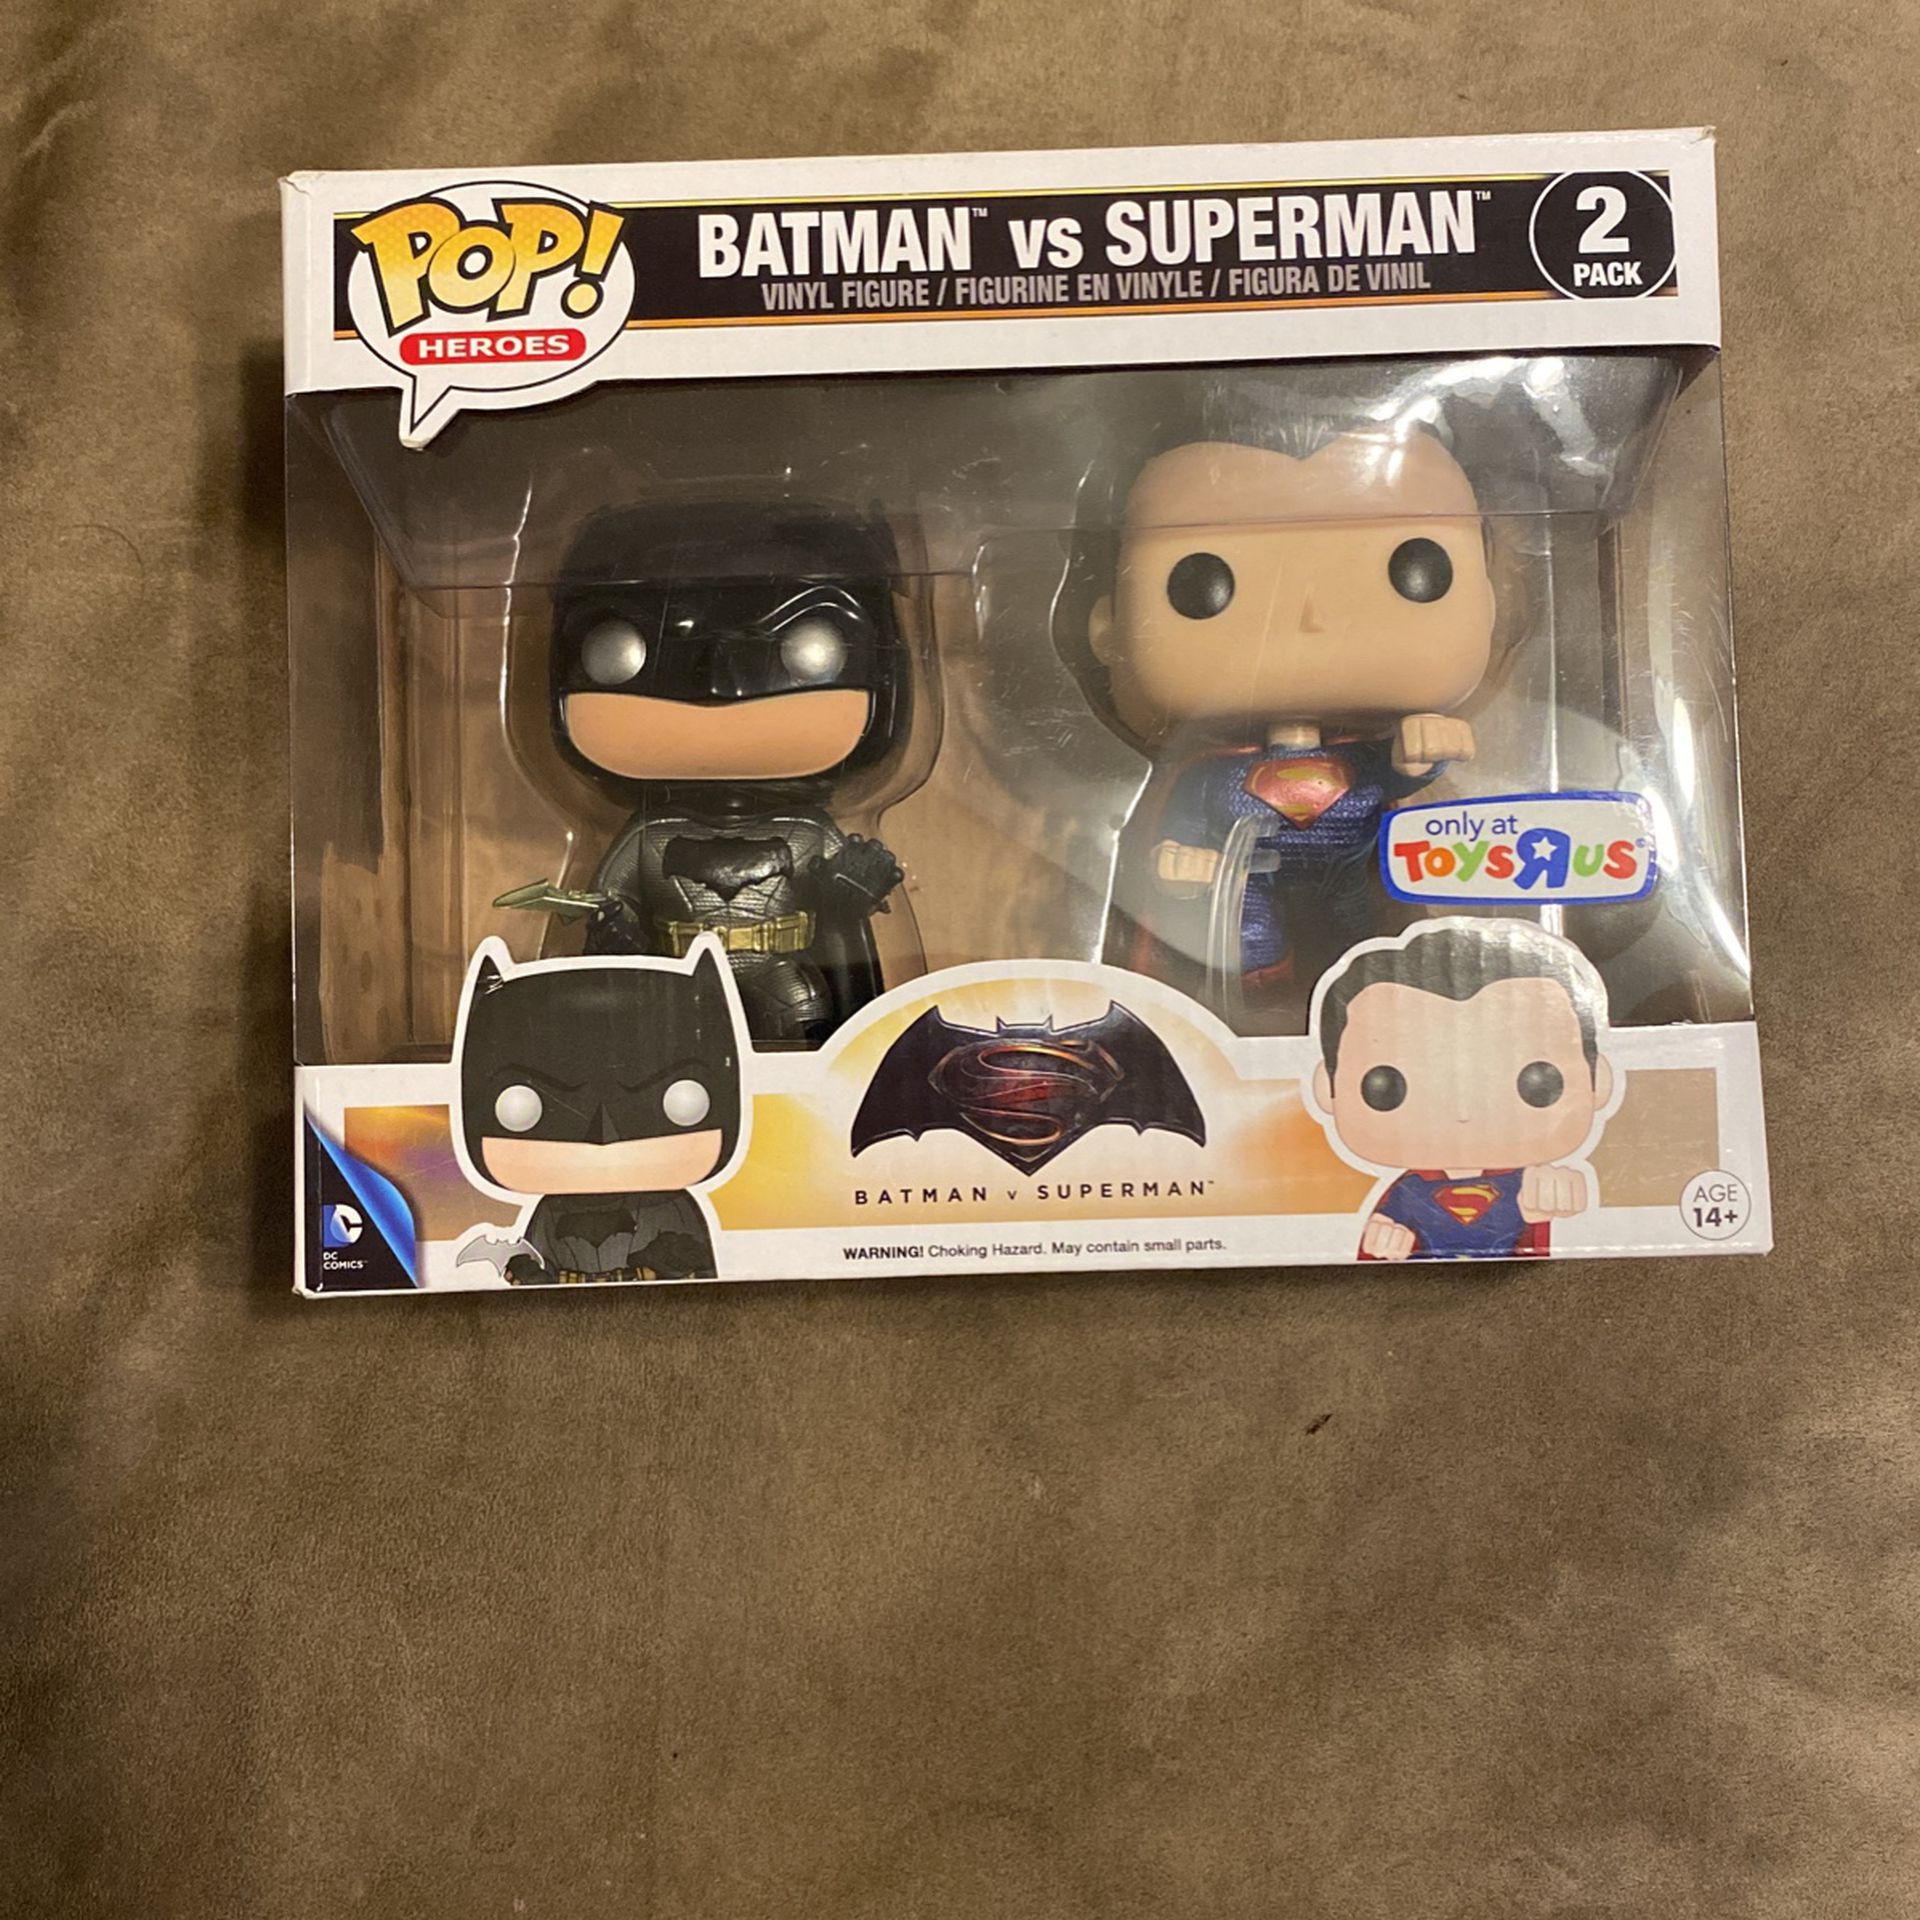 Batman Vs Superman Funko Pop Toys R Us for Sale in Miami, FL - OfferUp